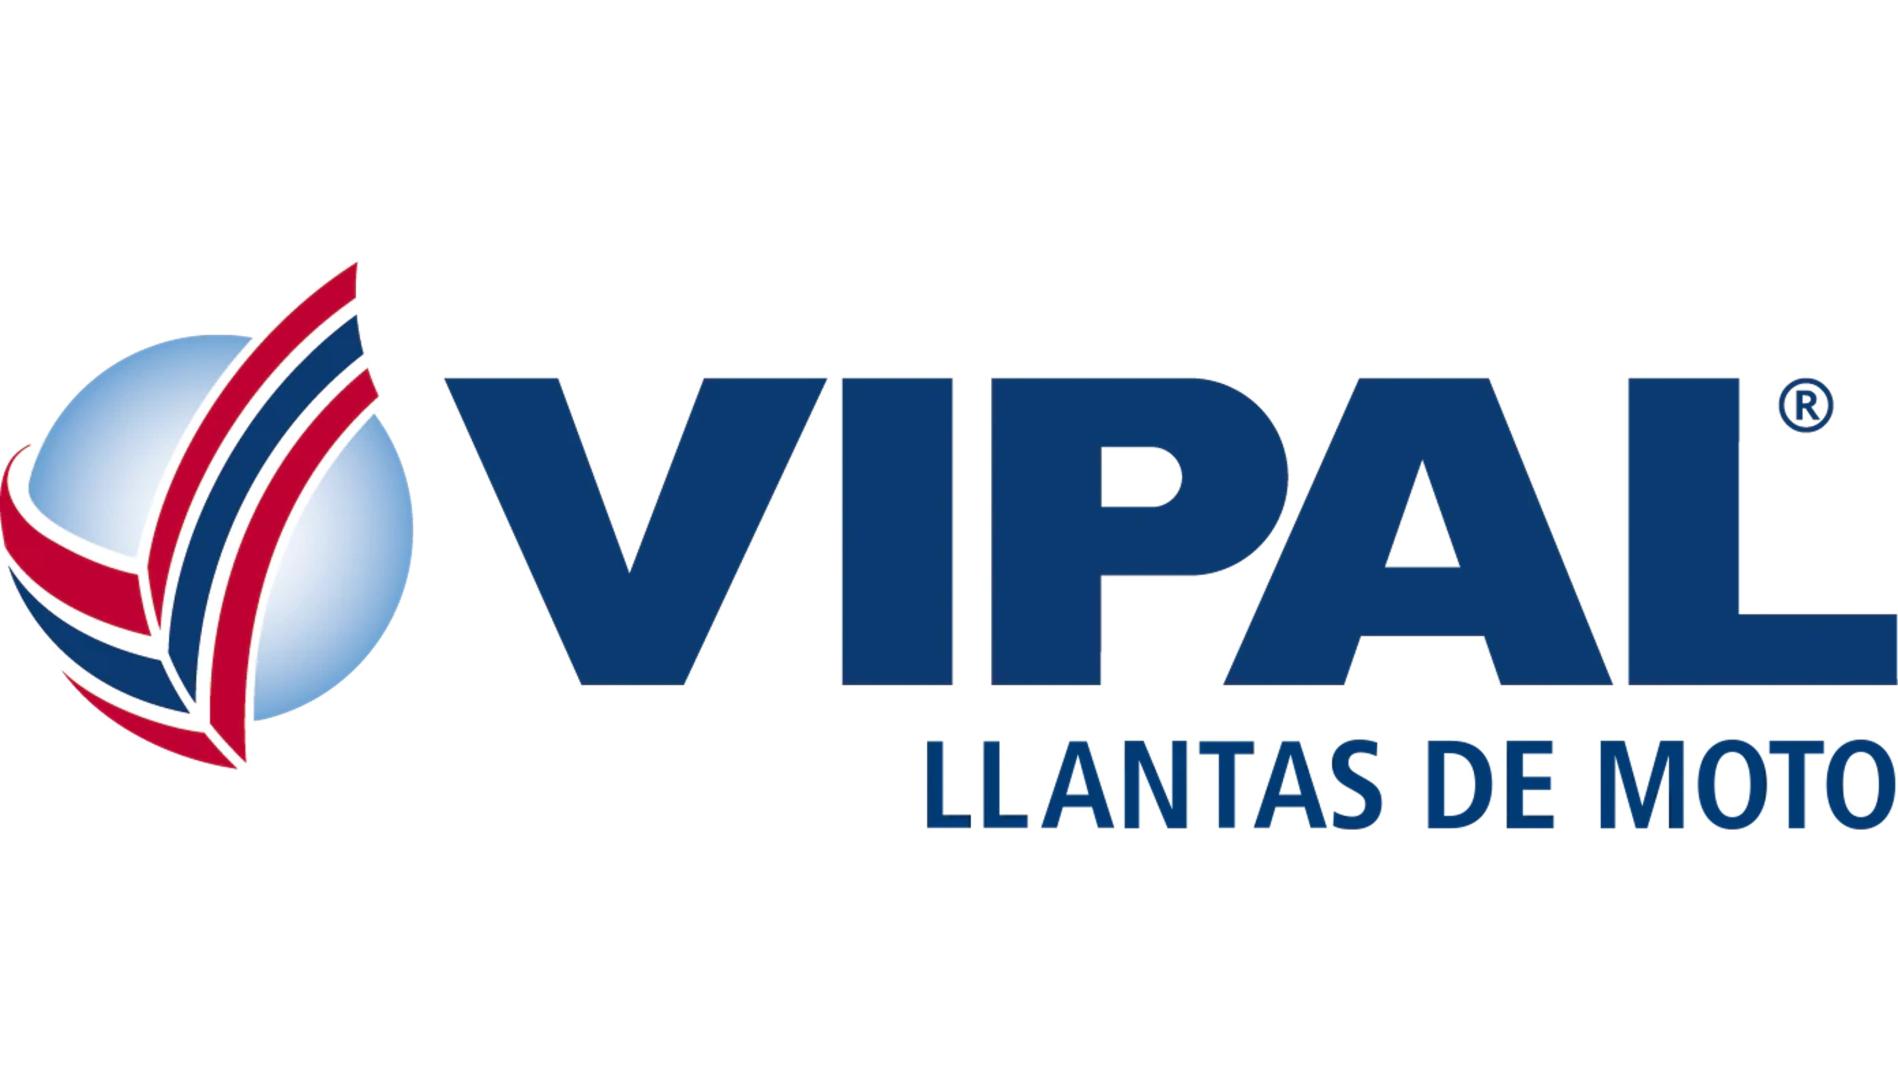 llantas-moto-vipal-LLANTAS DE MOTO VIPAL.jpg